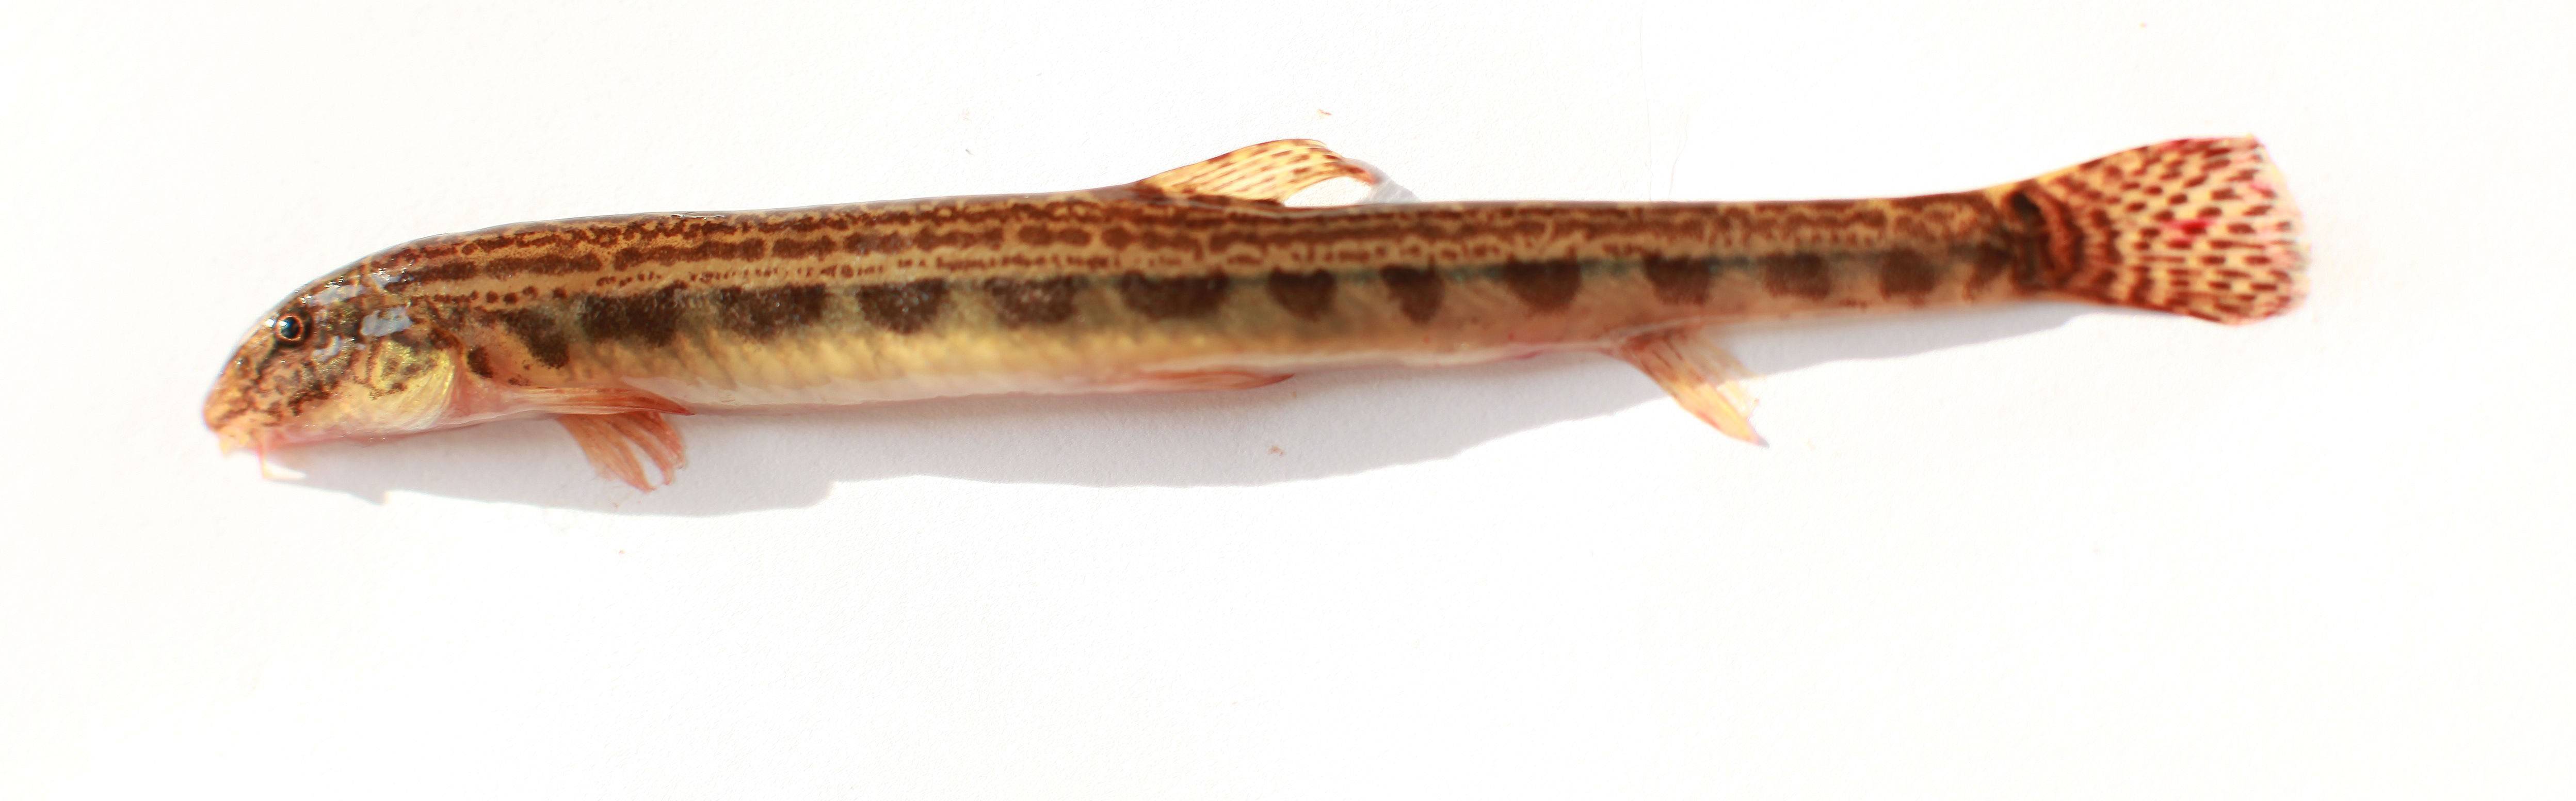 Рыба щекур: описание, жизненный цикл и питание, особенности ловли